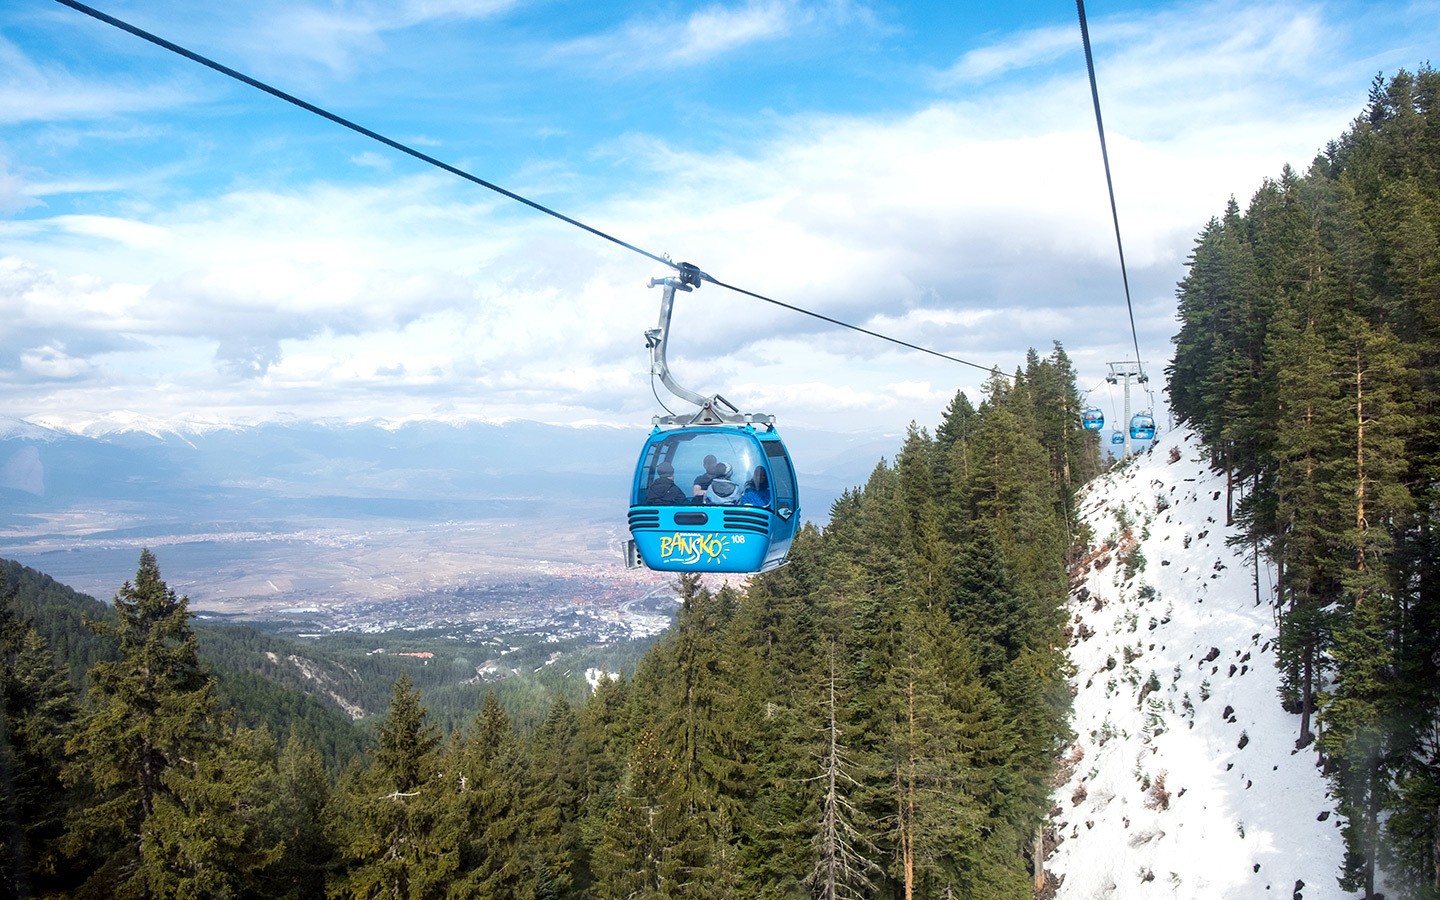 Skiing in Bulgaria: the gondola in Bansko ski resort